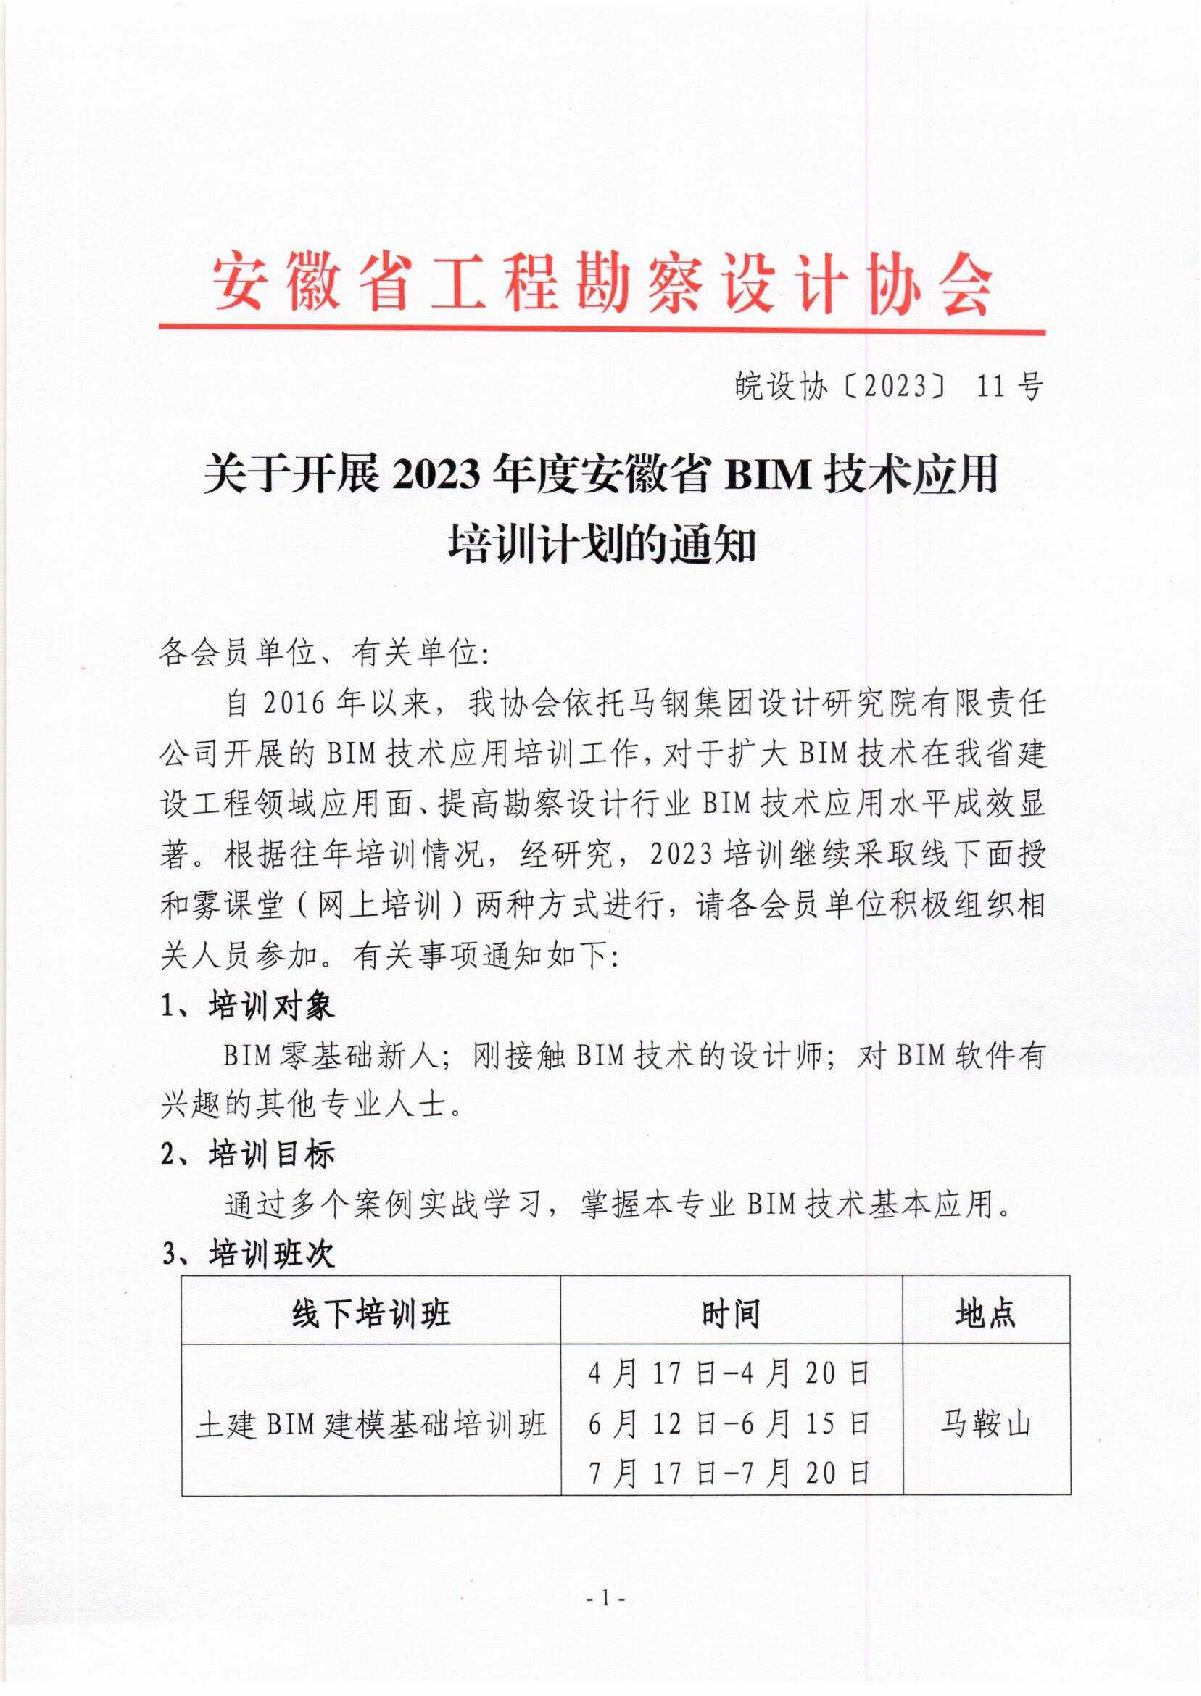 皖设协〔2023〕11号关于开展2023年度安徽省BIM技术应用培训计划的通知_1.jpg